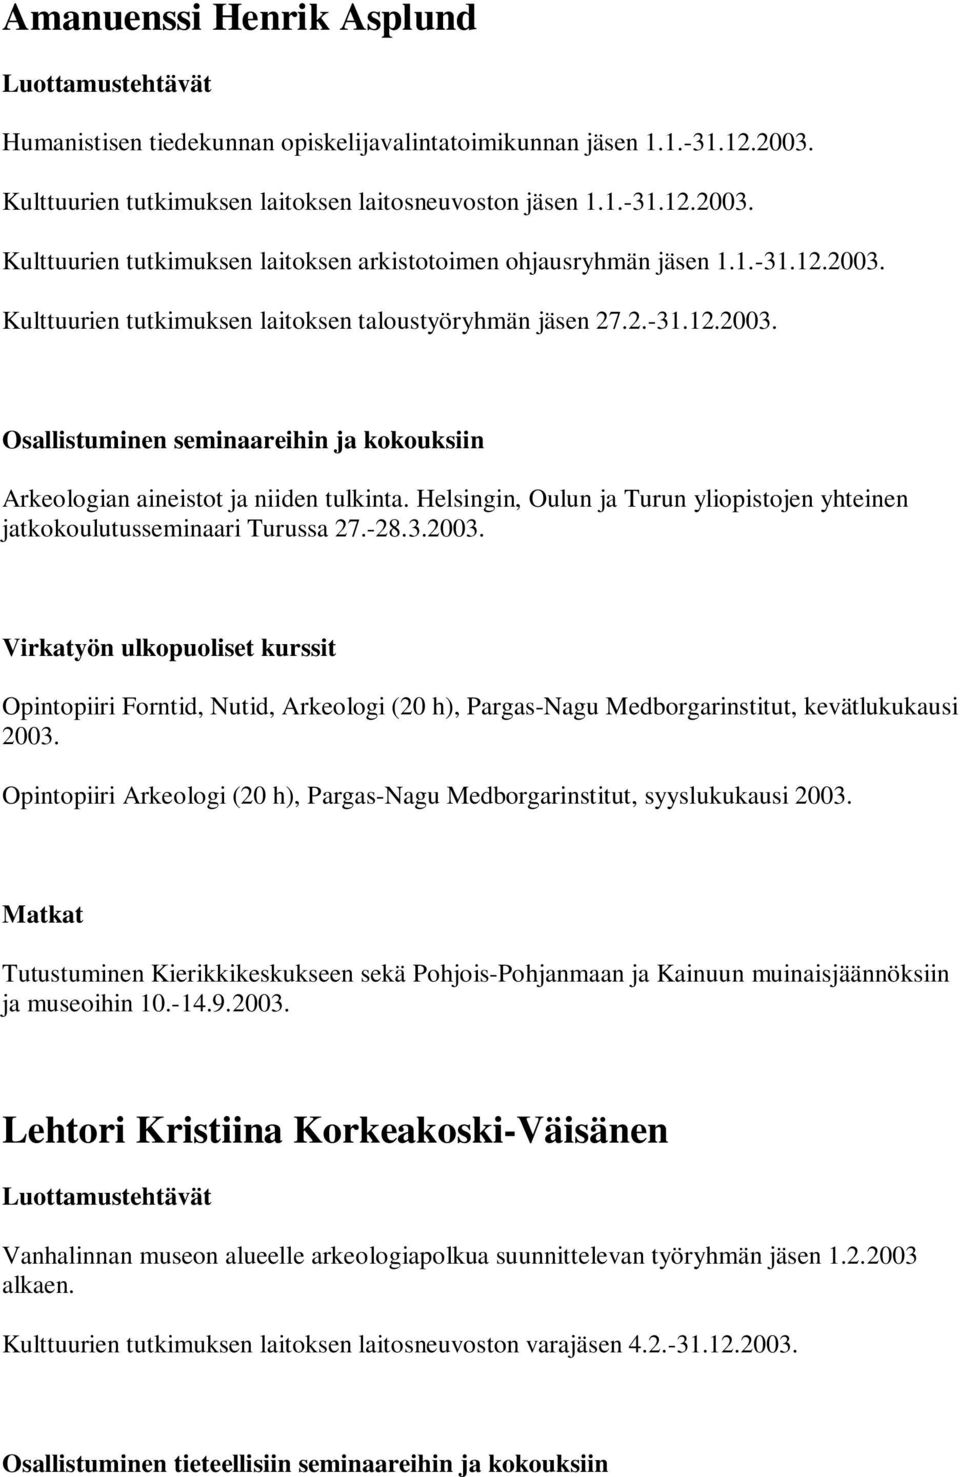 Helsingin, Oulun ja Turun yliopistojen yhteinen jatkokoulutusseminaari Turussa 27.-28.3.2003.